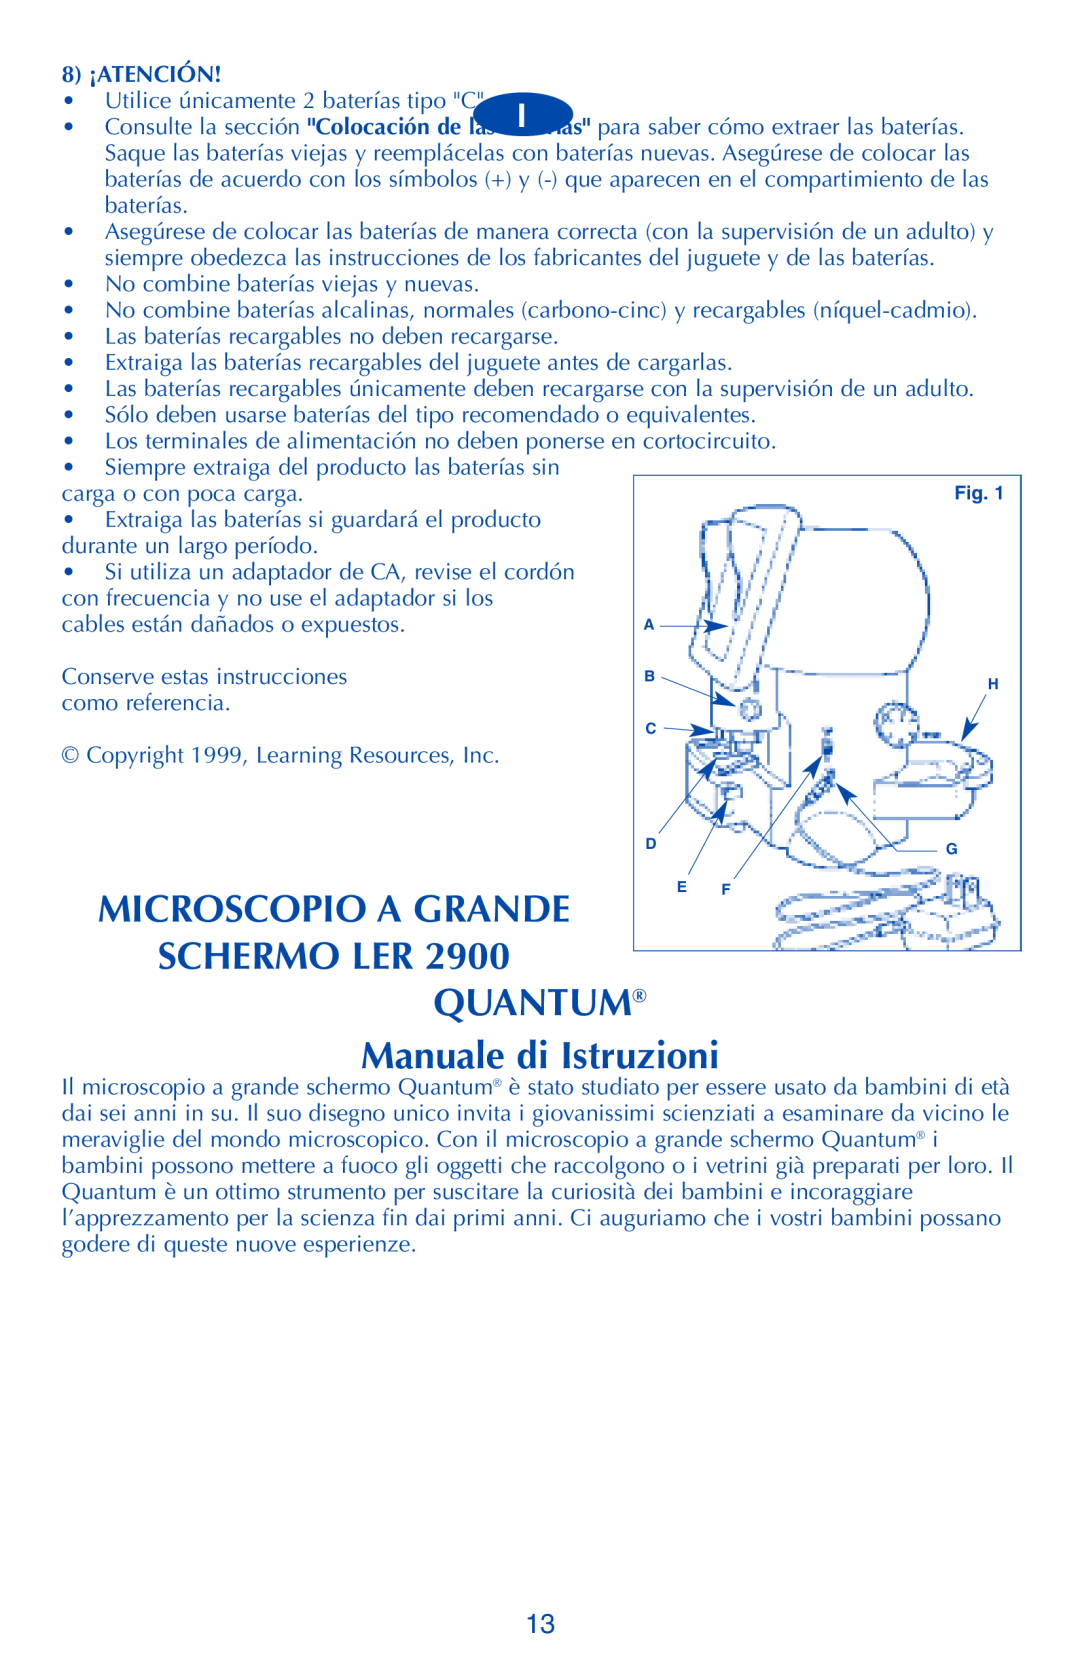 Quantum LER 2900 manual Microscopio A Grande, SCHERMO LER QUANTUM Manuale di Istruzioni, 8 ¡ATENCIÓN, como referencia 